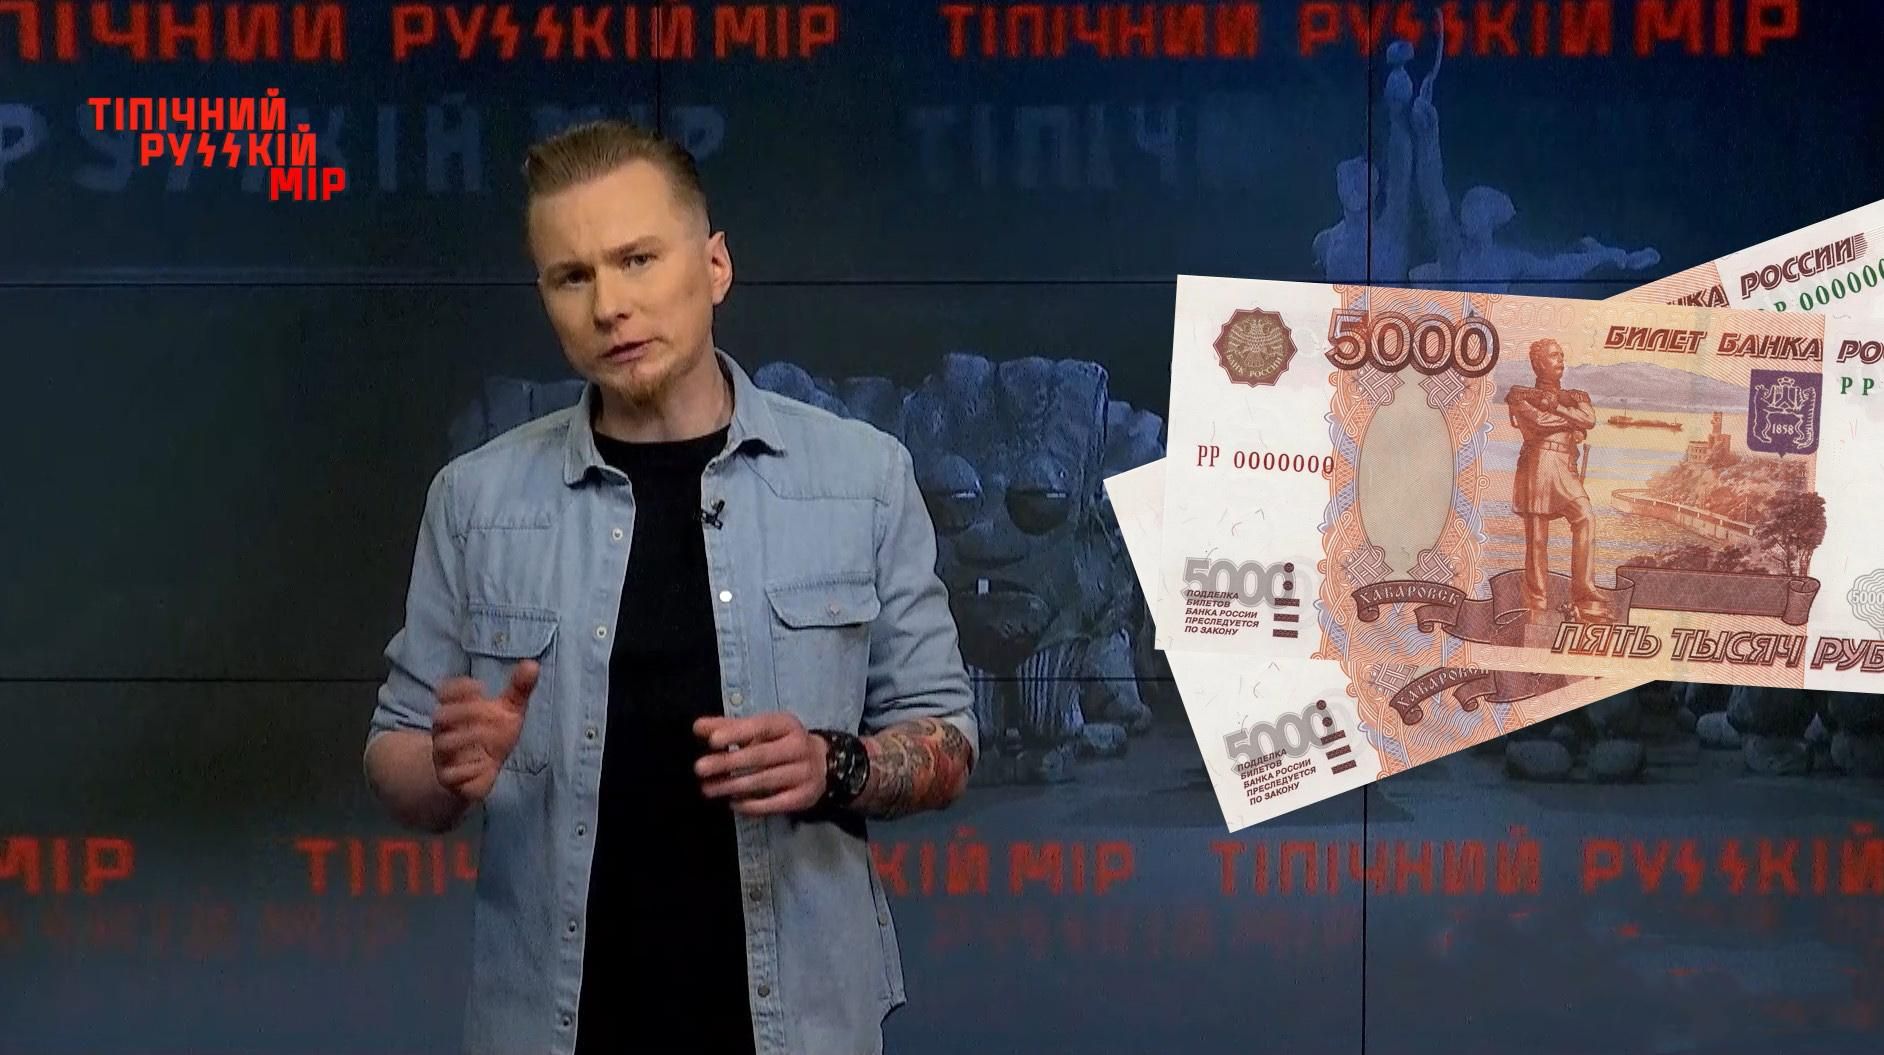 Тіпічний русскій мір: Російським ветеранам не потрібні гроші